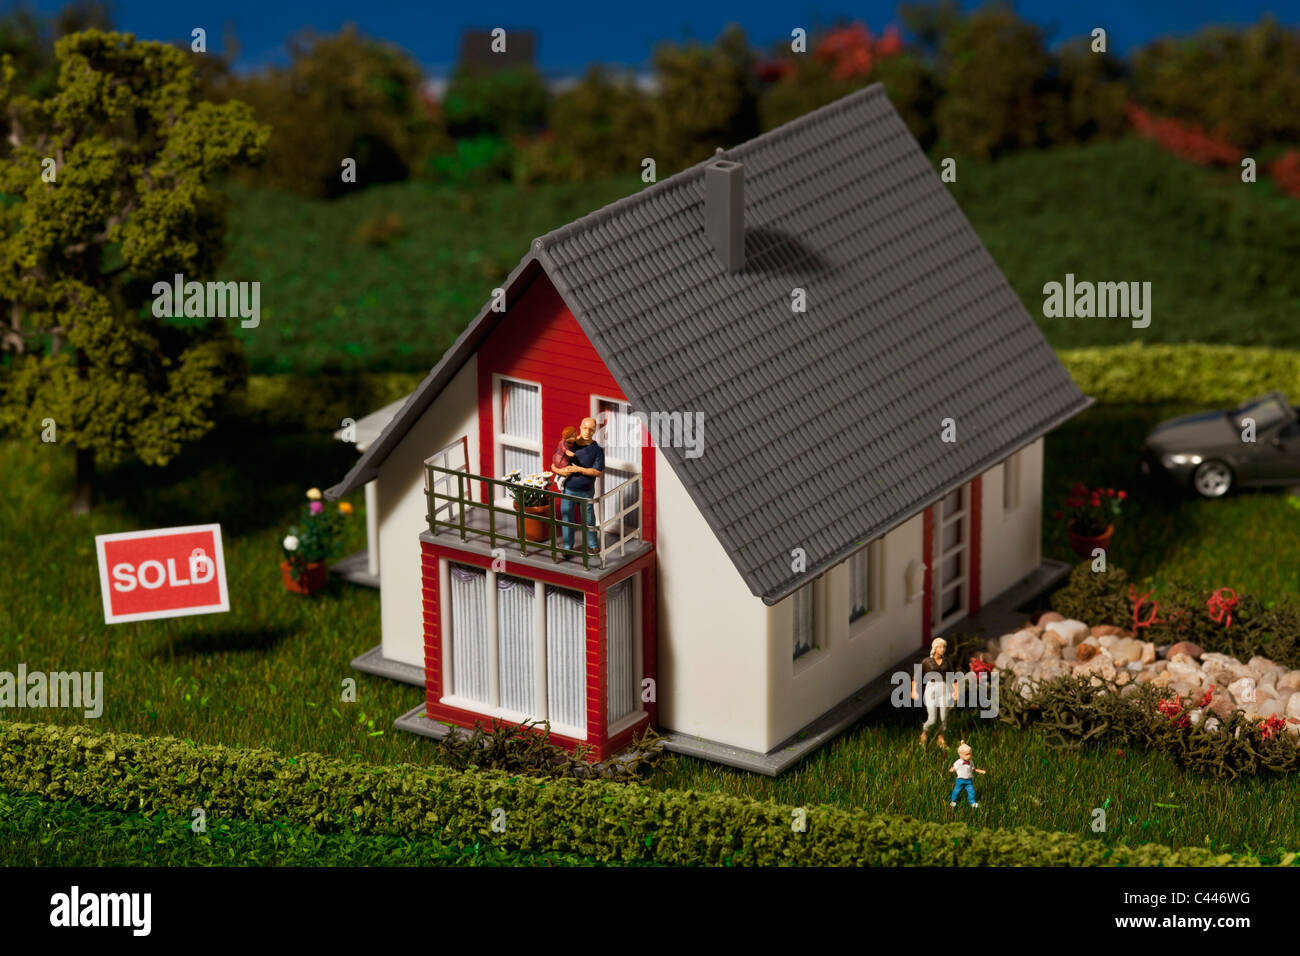 Un diorama d'une maison miniature avec une famille de figurines et un SOLD sign Banque D'Images